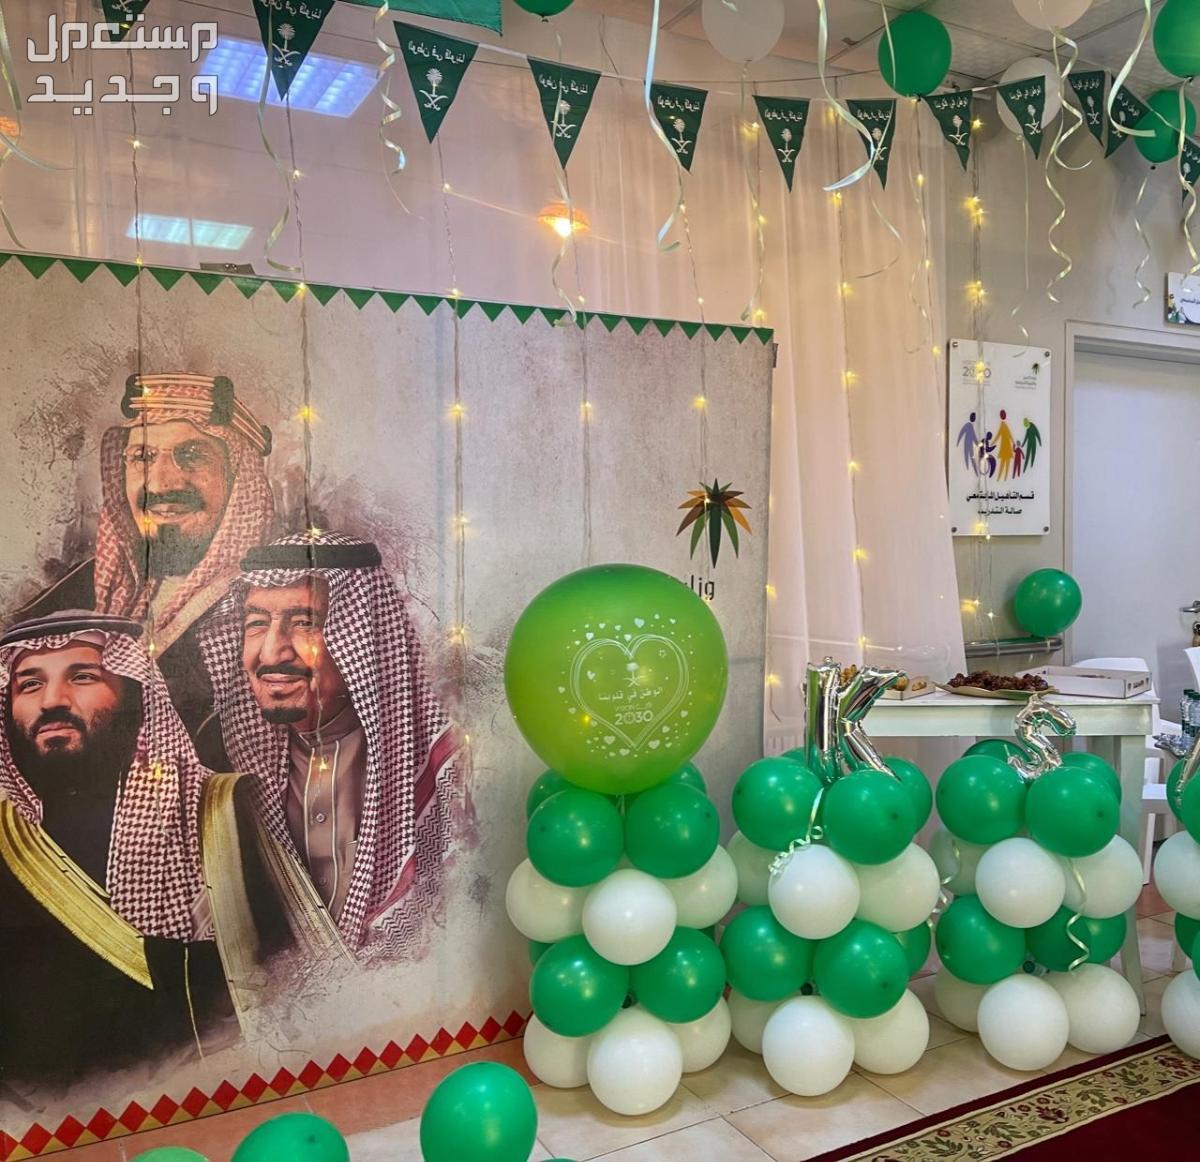 صور ديكورات داخلية بمناسبة اليوم الوطني السعودي 1445 في جيبوتي ديكورات داخلية بمناسبة اليوم الوطني